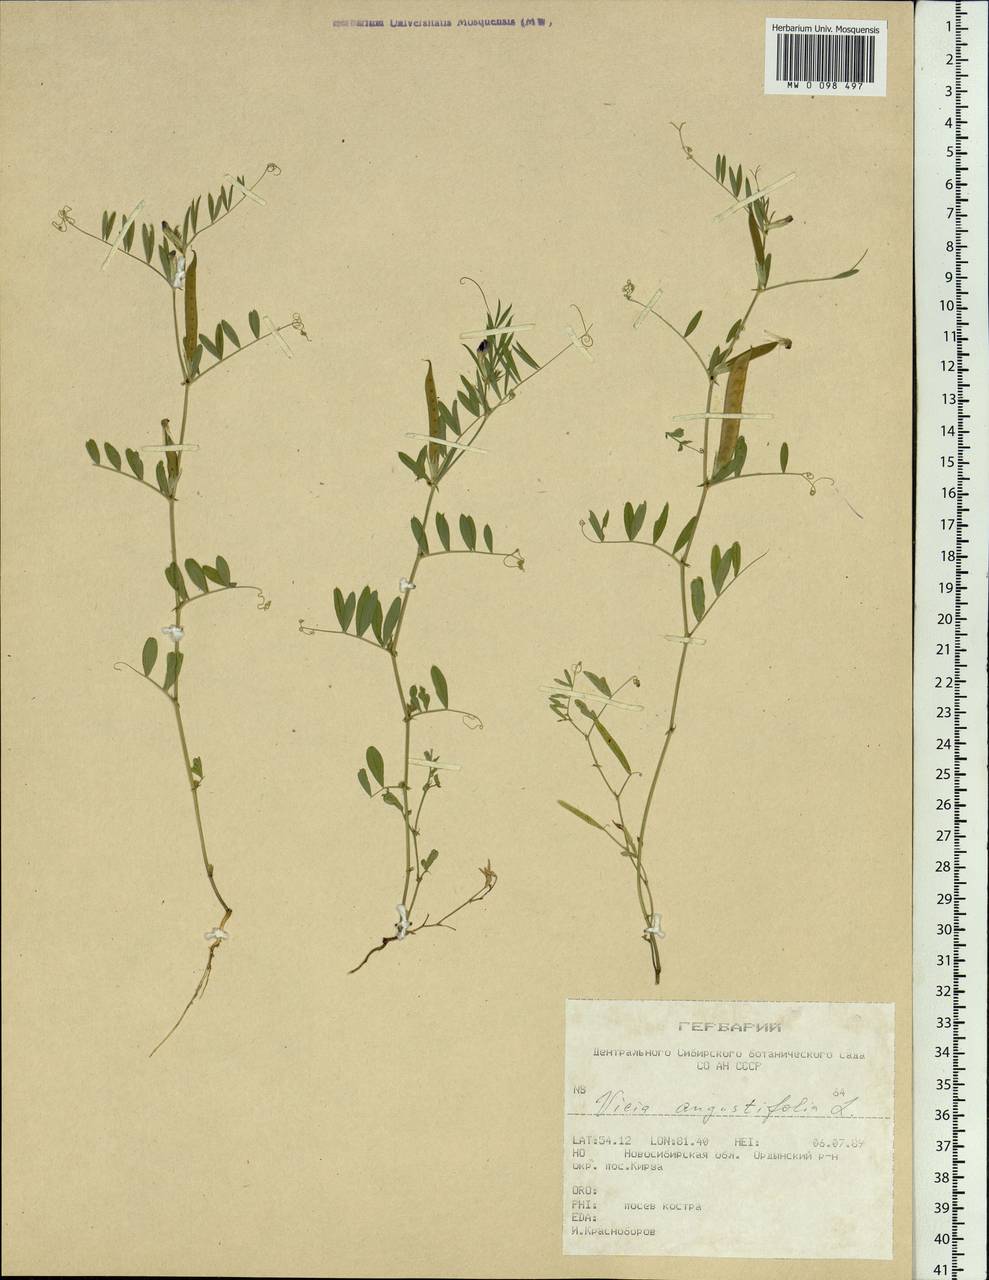 Vicia sativa subsp. nigra (L.)Ehrh., Siberia, Western Siberia (S1) (Russia)